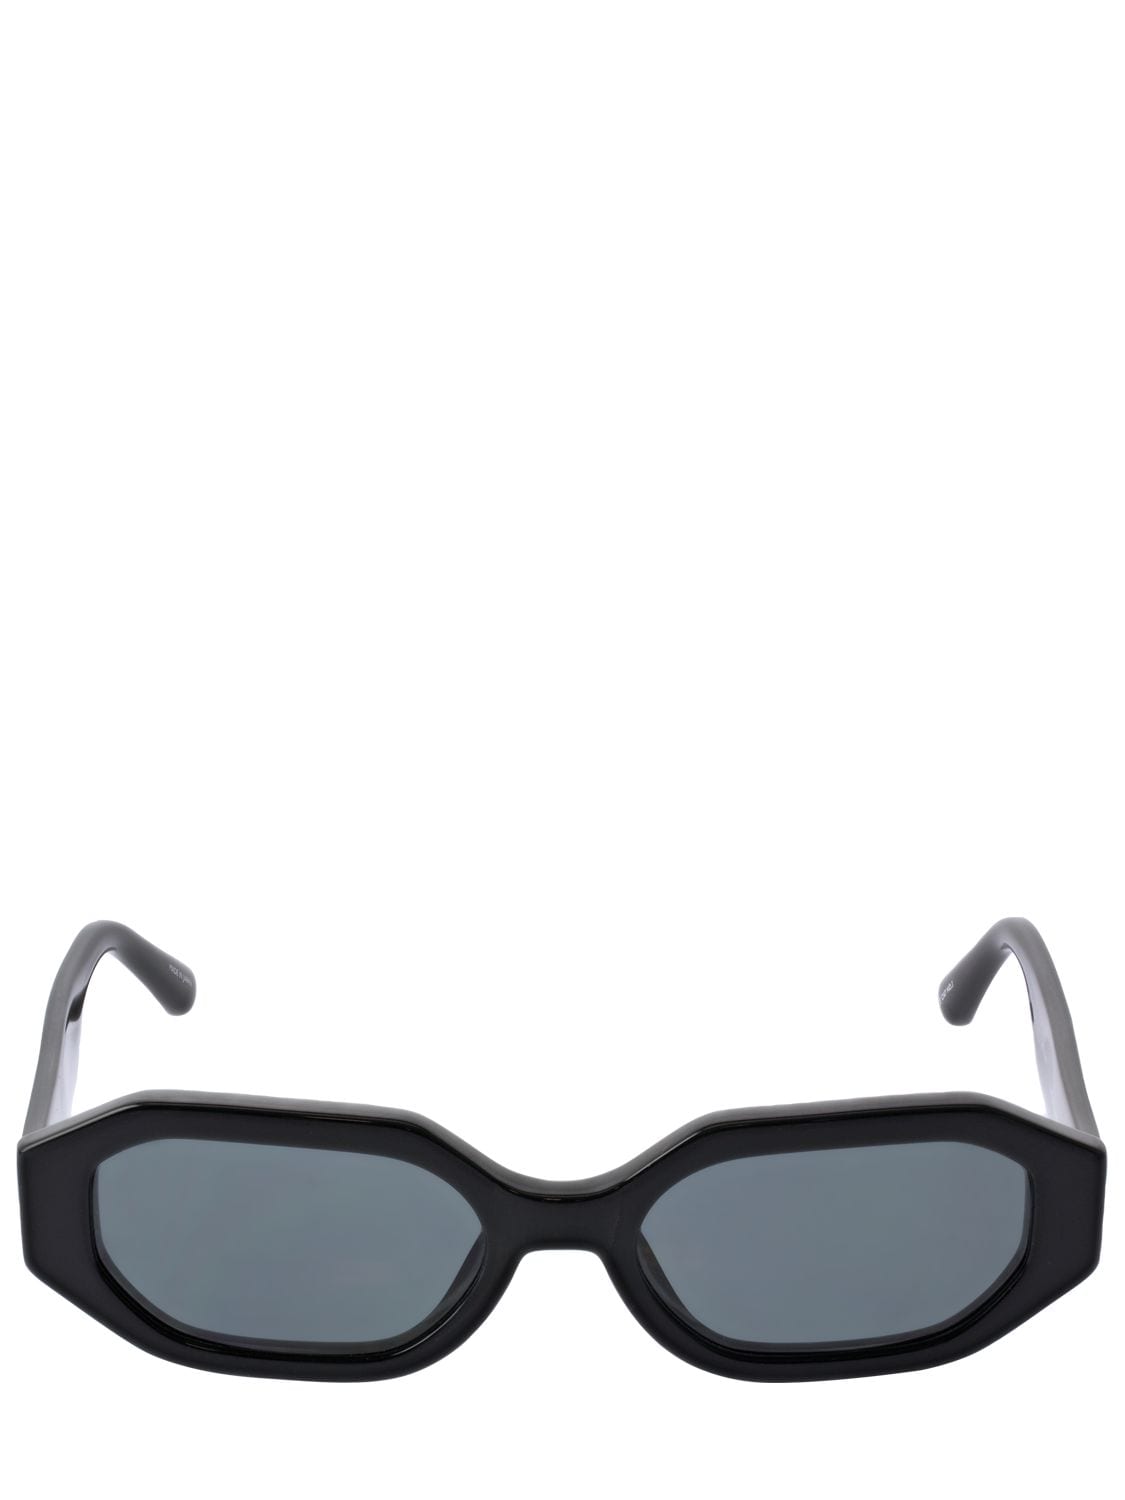 Image of Irene Squared Bio-acetate Sunglasses